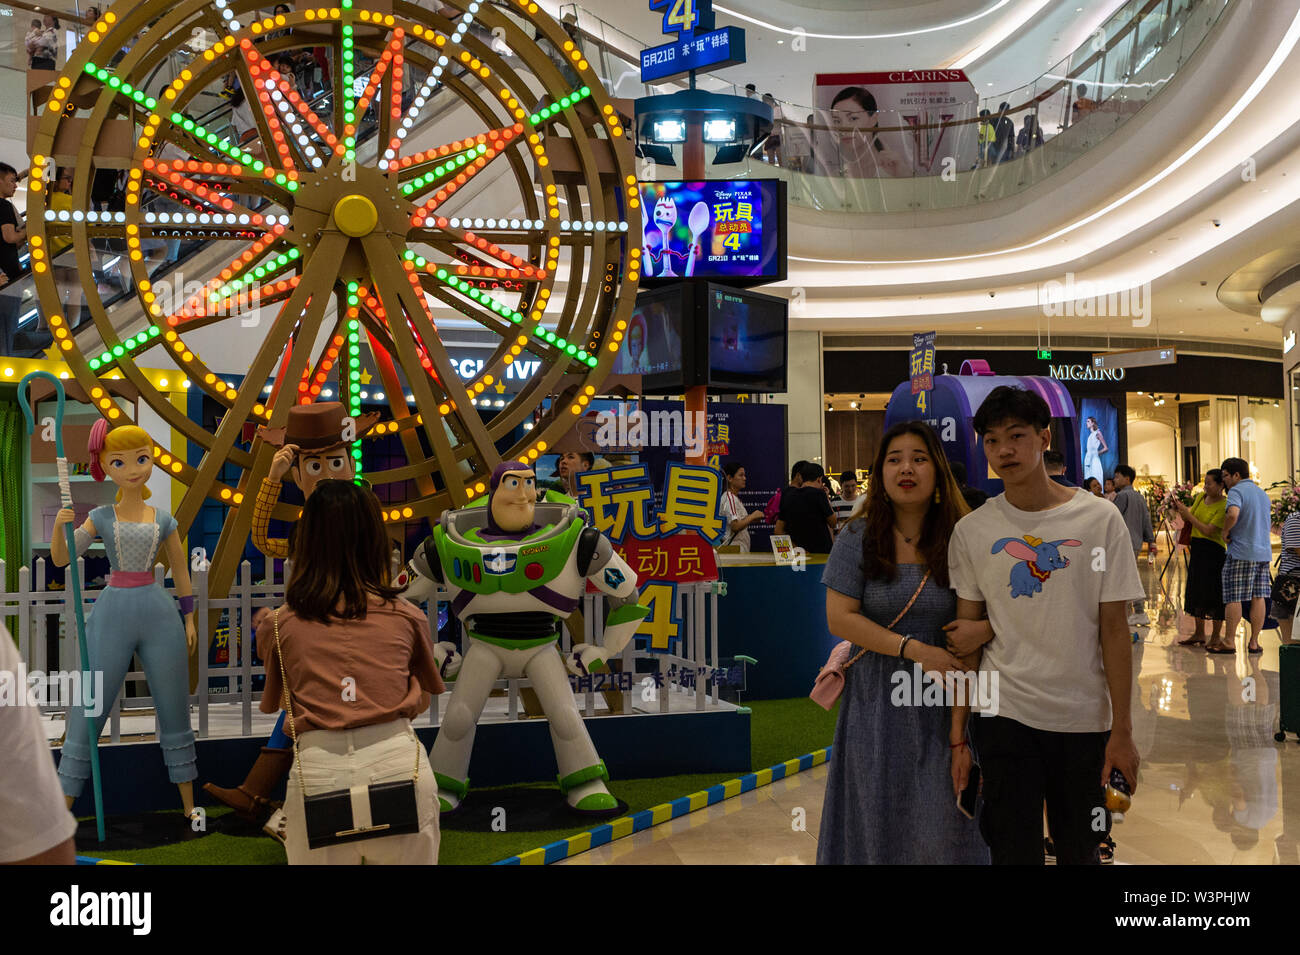 Cina continentale promozione di film western film Toy Story 4 in corrispondenza di un centro commerciale di Shenzhen, Cina Foto Stock